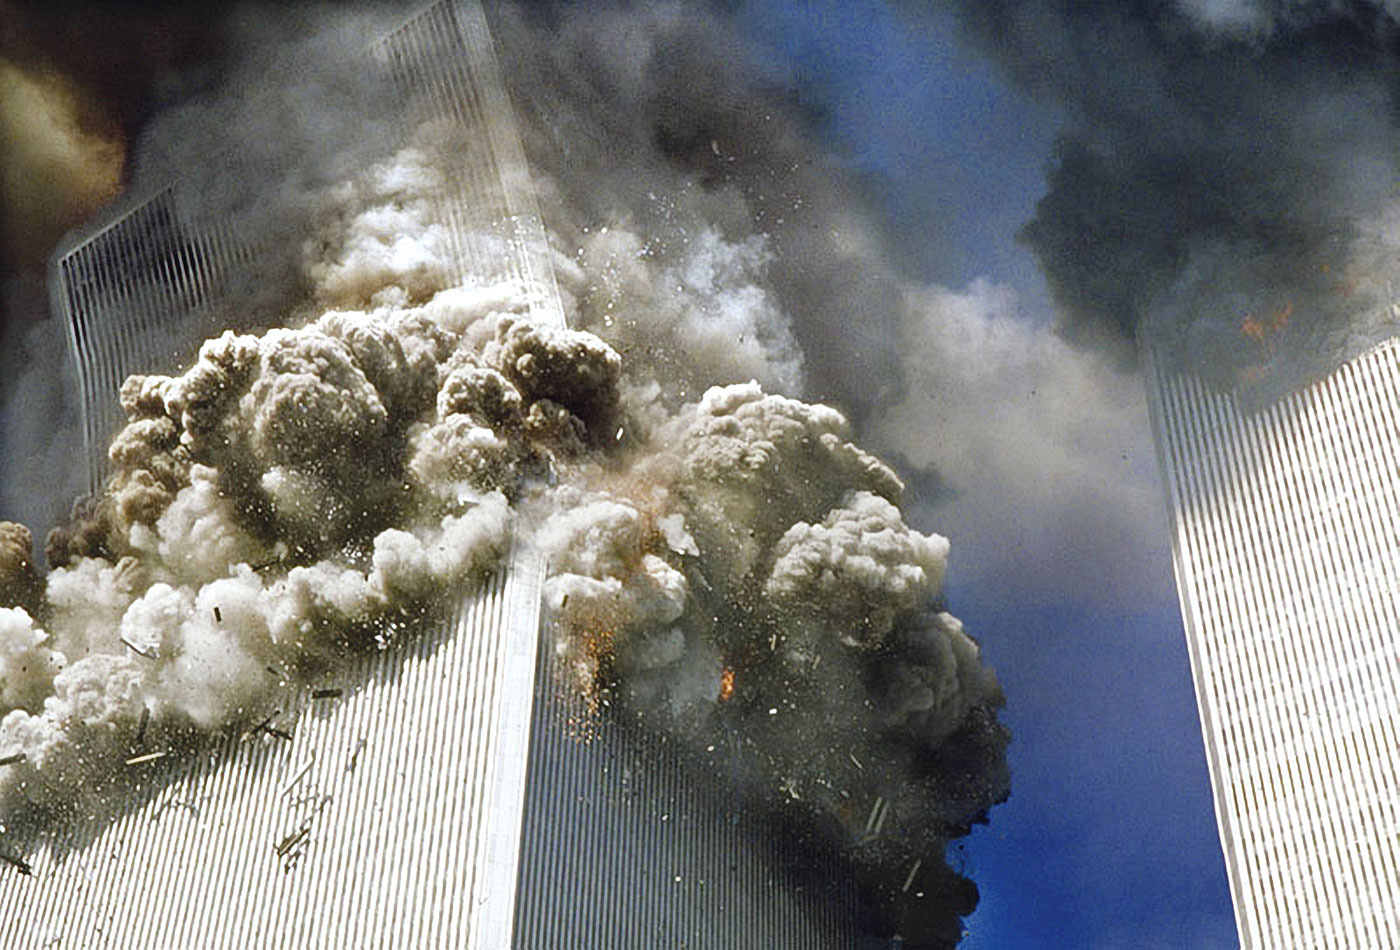 Теракт 11 сентября 2001 года